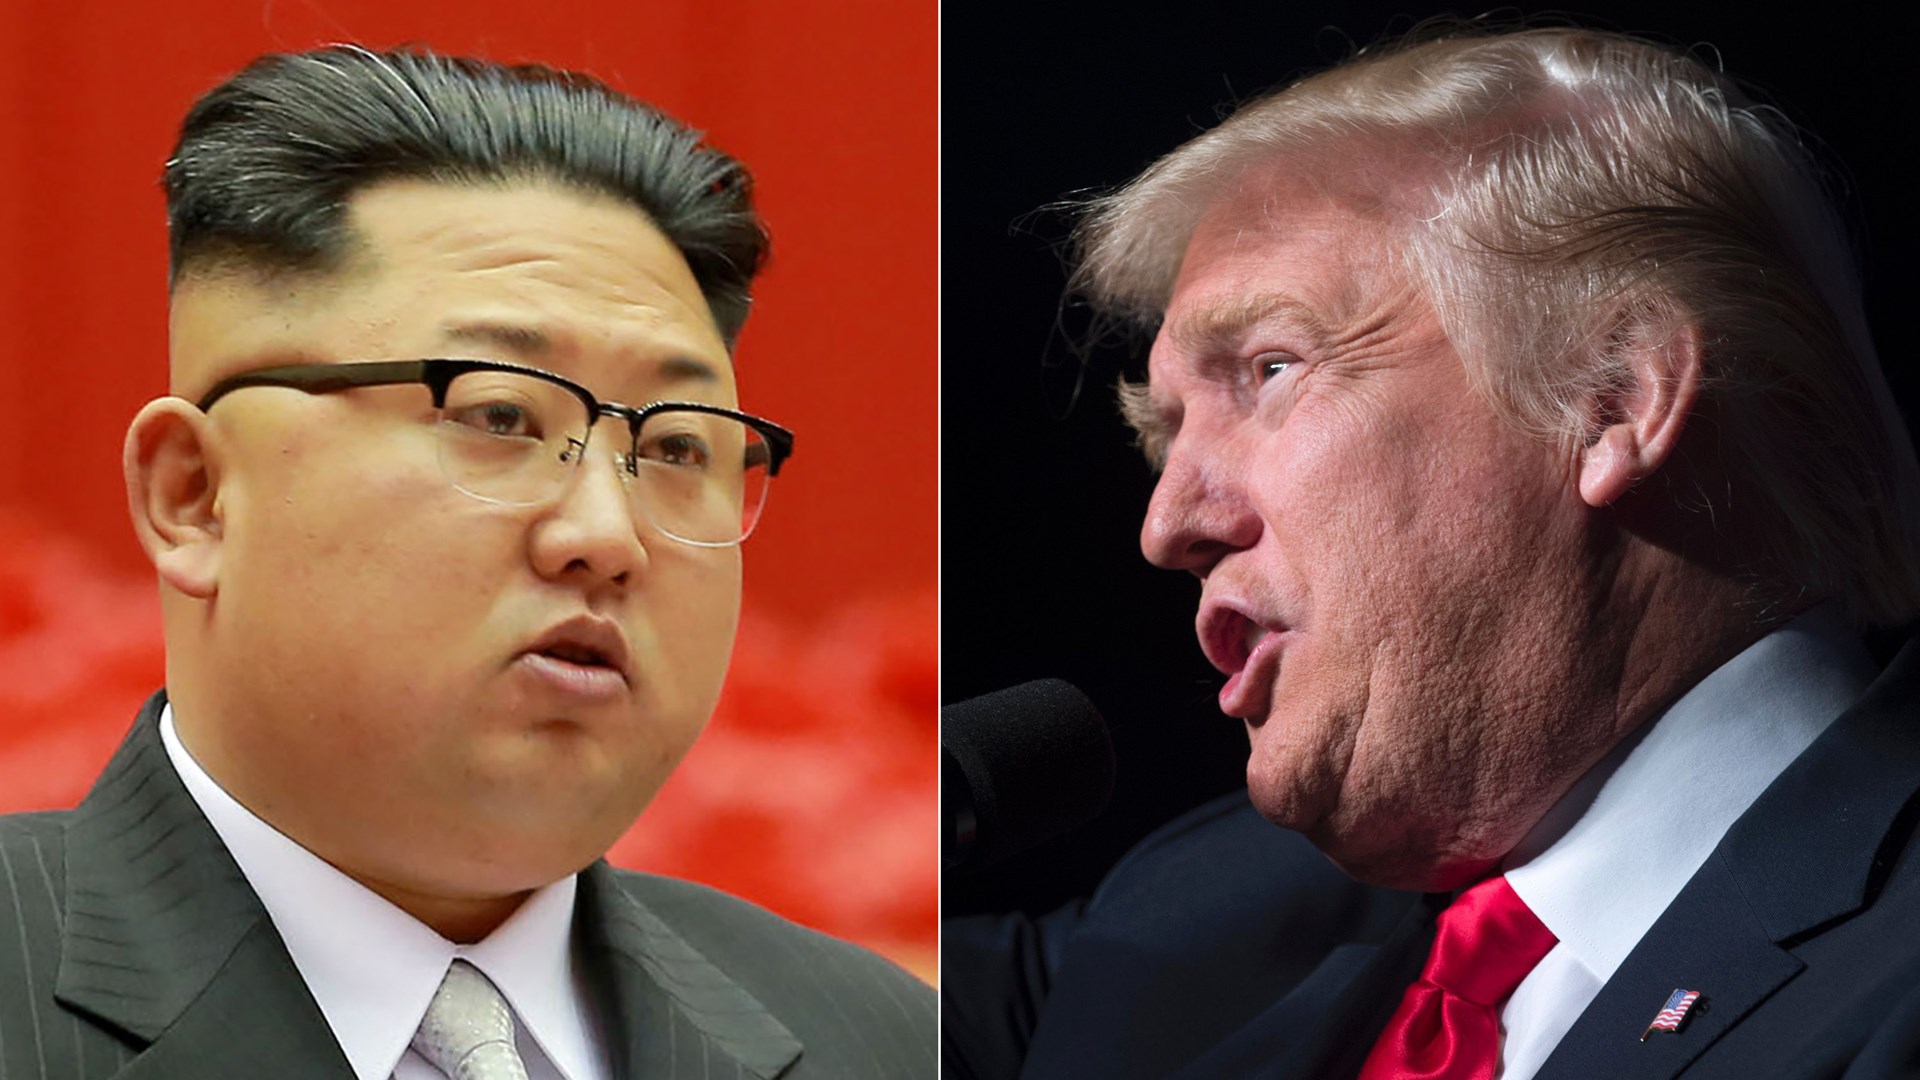 Ο Κιμ Γιονγκ Ουν υπόσχεται να μην πατήσει ξανά το κουμπί – Τα πανηγυρικά tweets του Τραμπ και η αντίδραση της Νότιας Κορέας